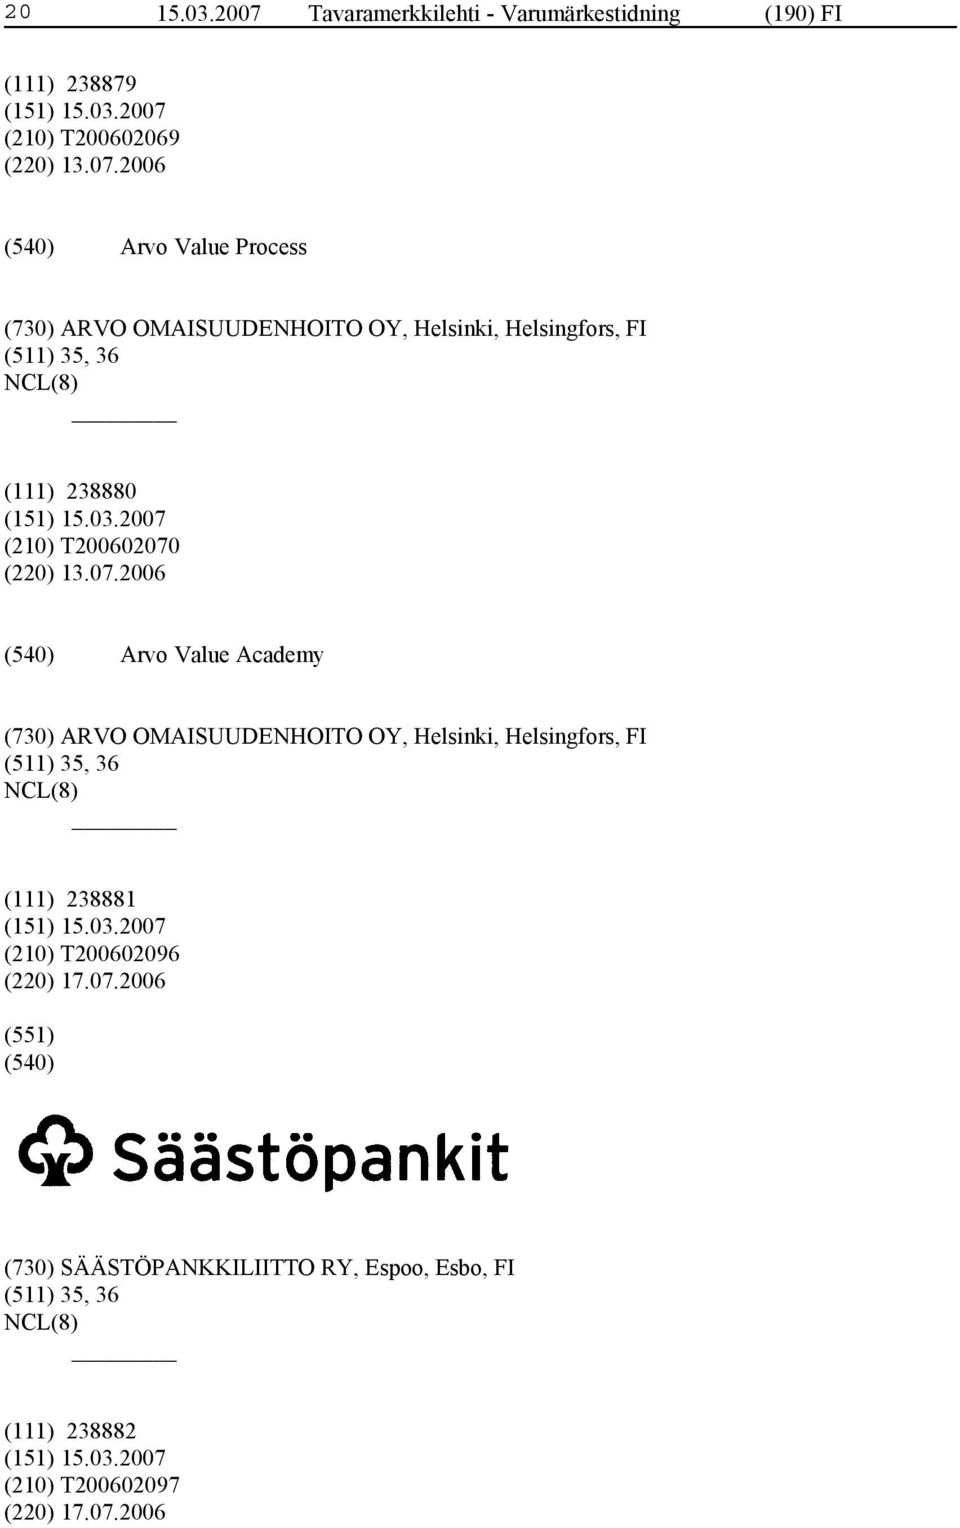 2006 Arvo Value Process (730) ARVO OMAISUUDENHOITO OY, Helsinki, Helsingfors, FI (511) 35, 36 (111) 238880 (210)